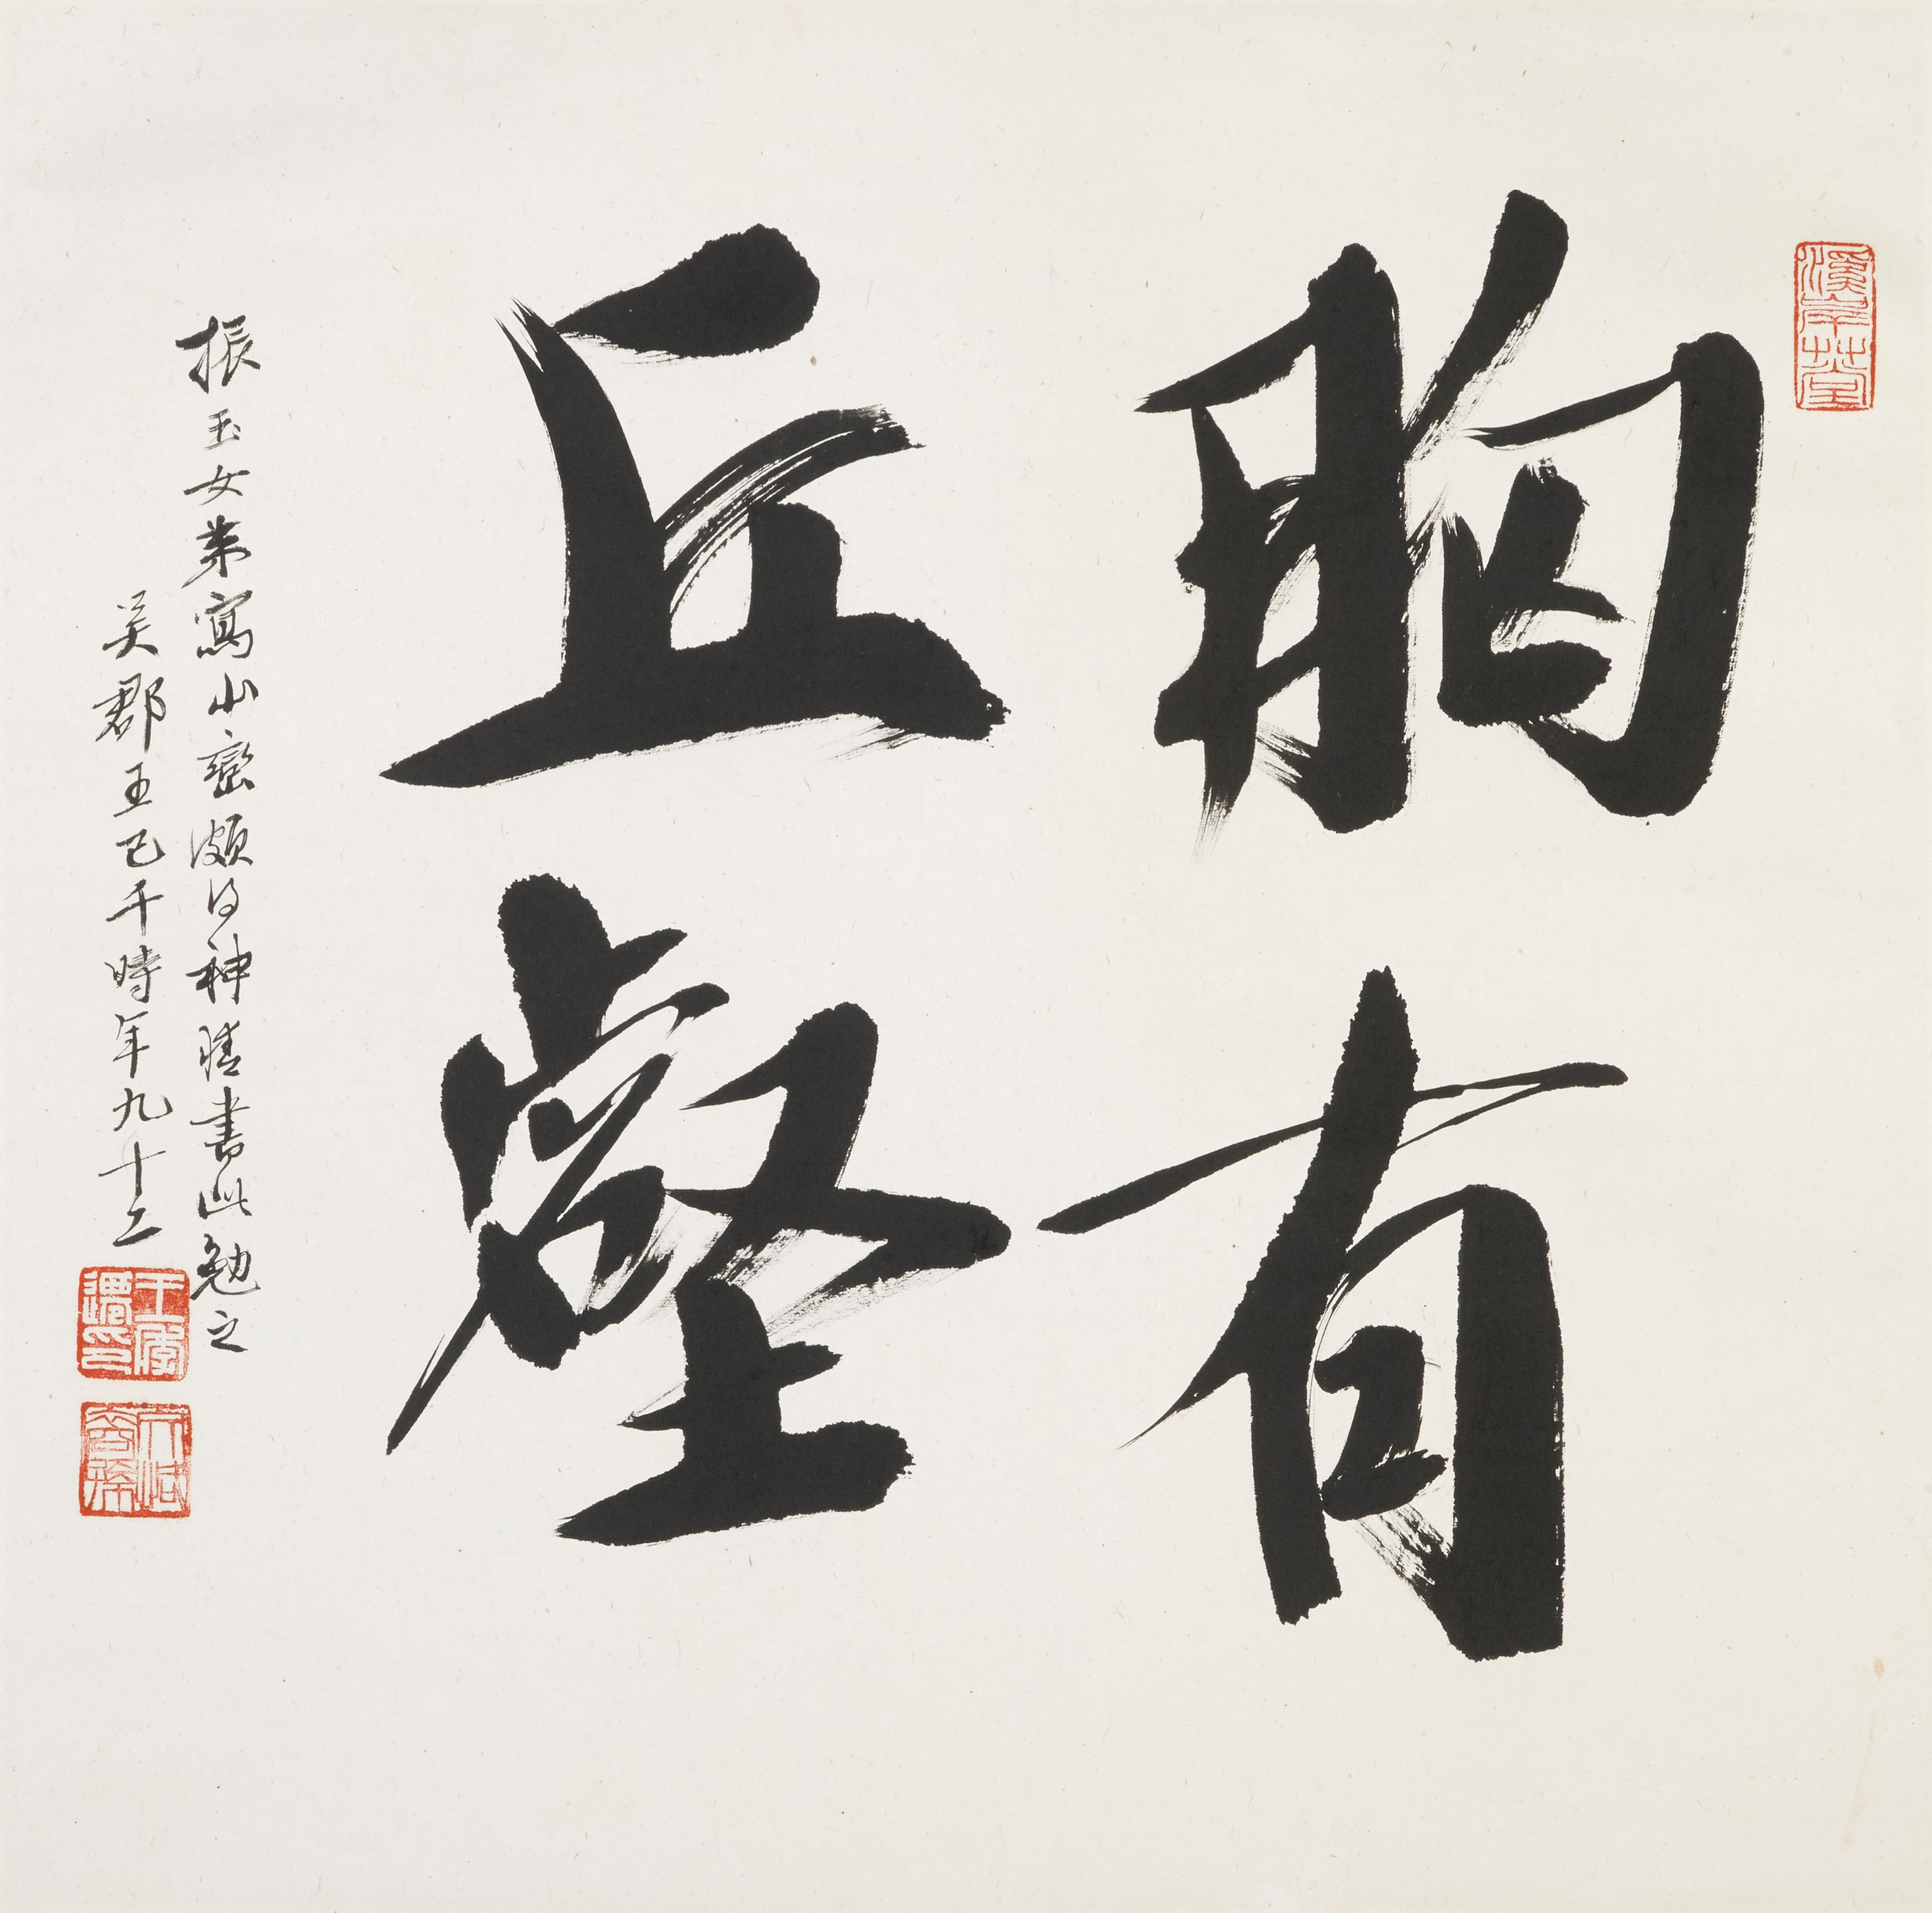 Wang Jiqian (C. C. Wang, 1907-2003)